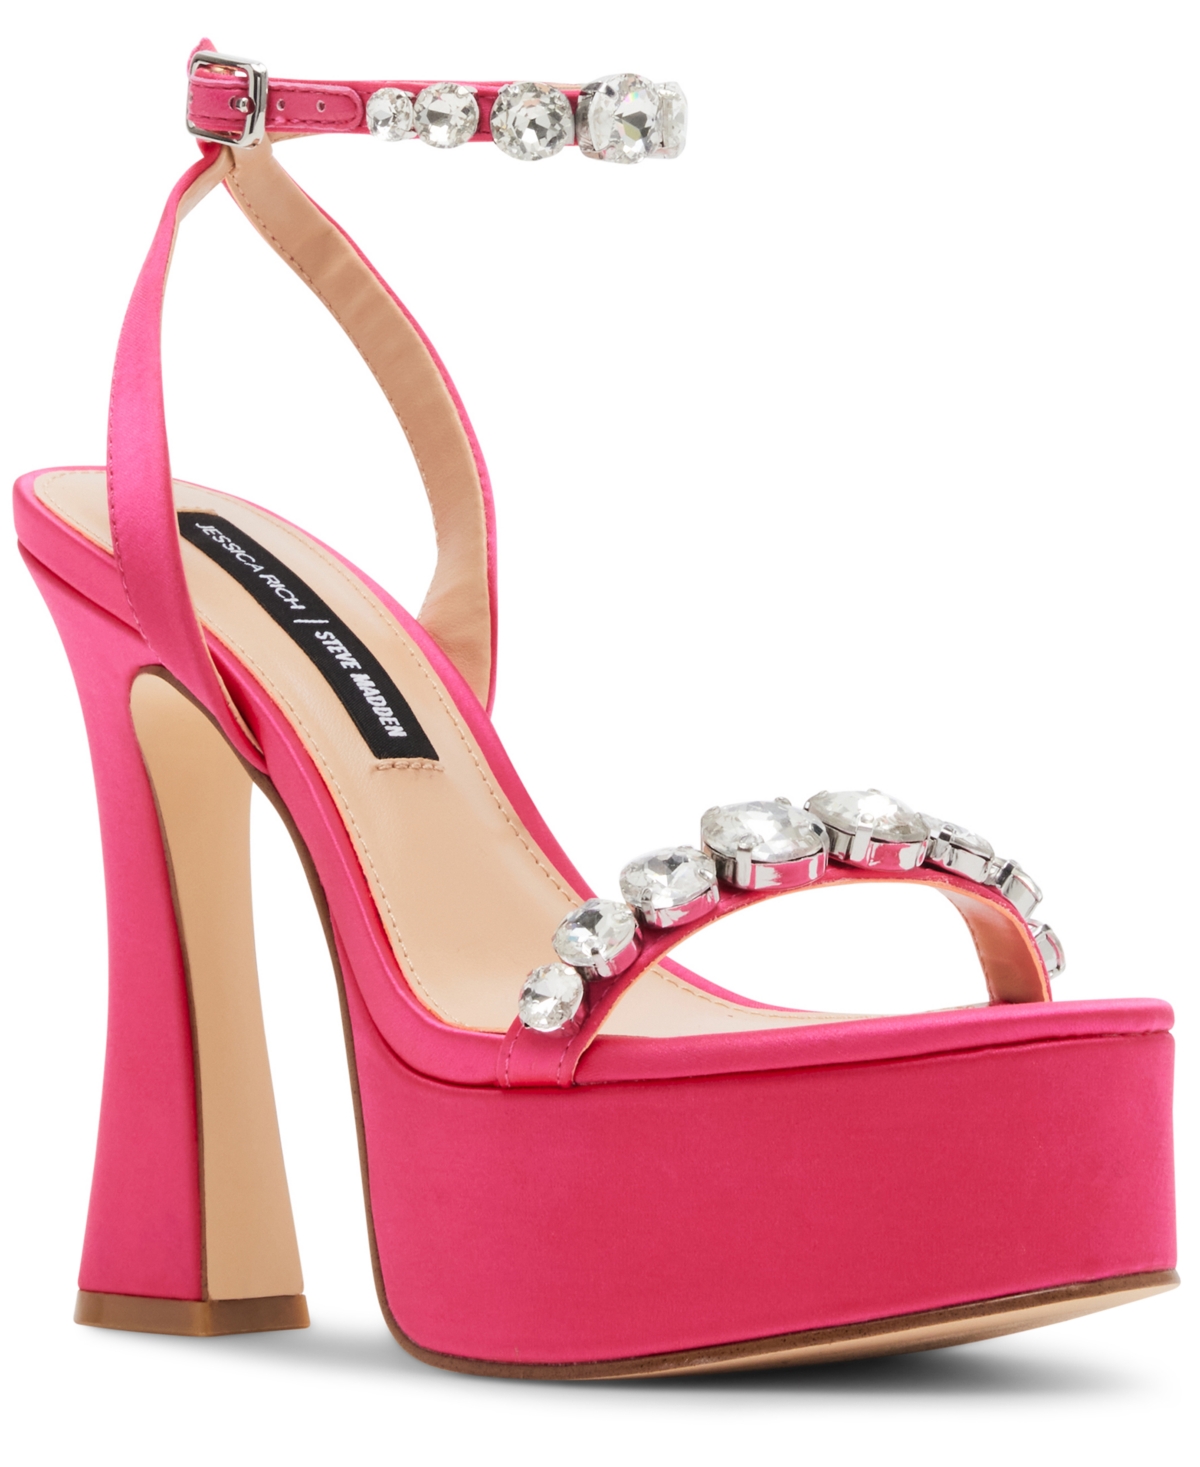 Jessica Rich x Steve Madden Zoey Platform Two-Piece Sandals - Hot Pink/Rhinestone